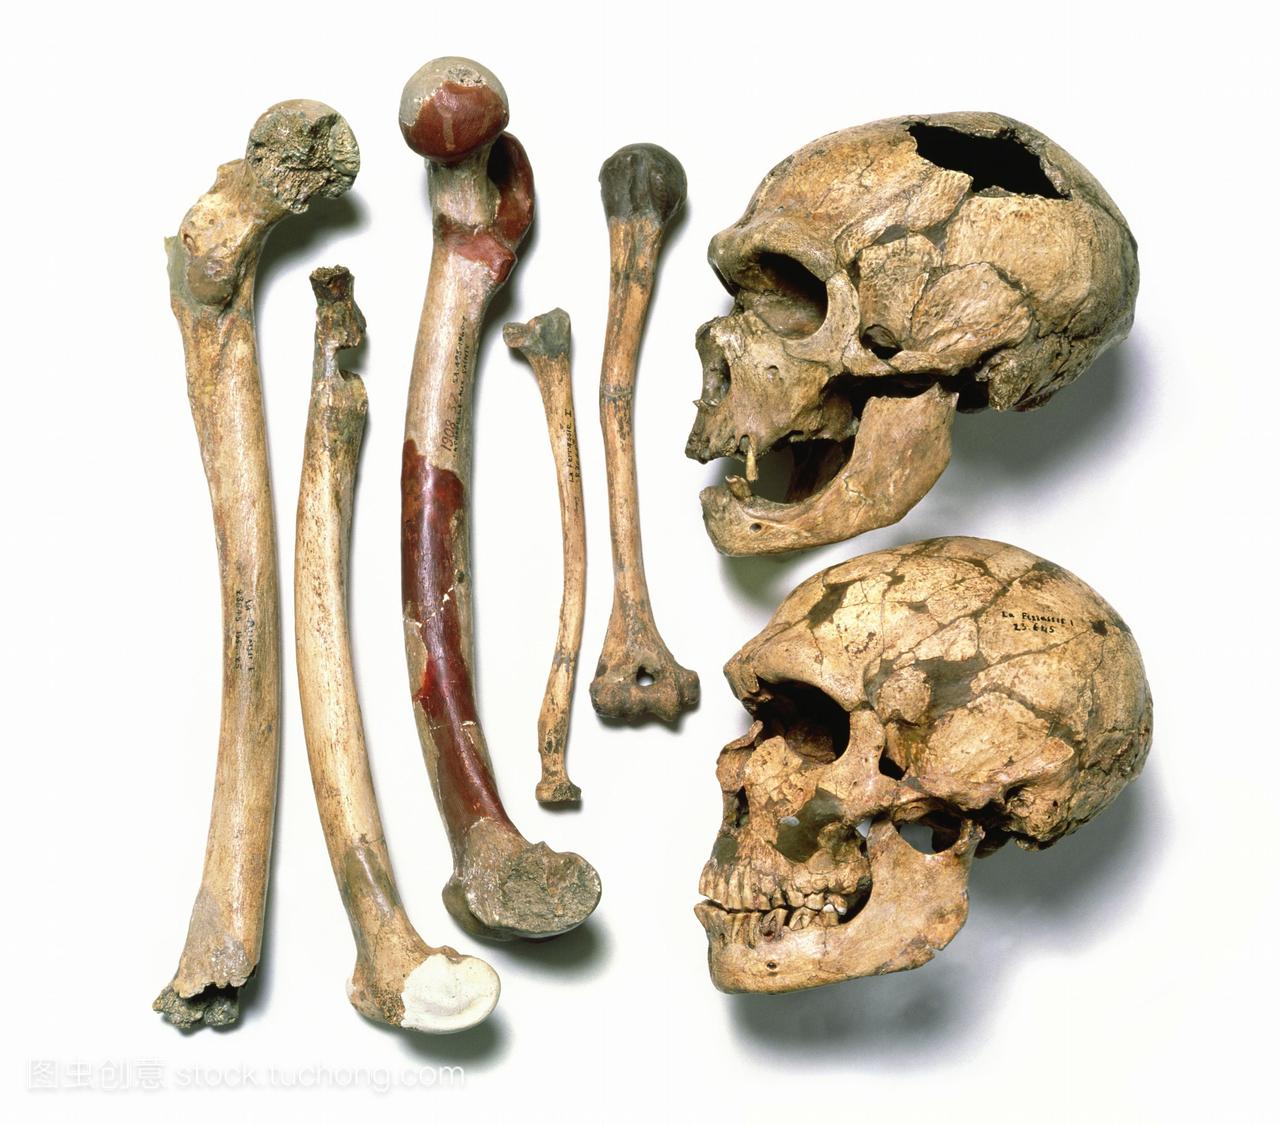 尼安德特人的头骨和骨骼。顶部的头骨是1908